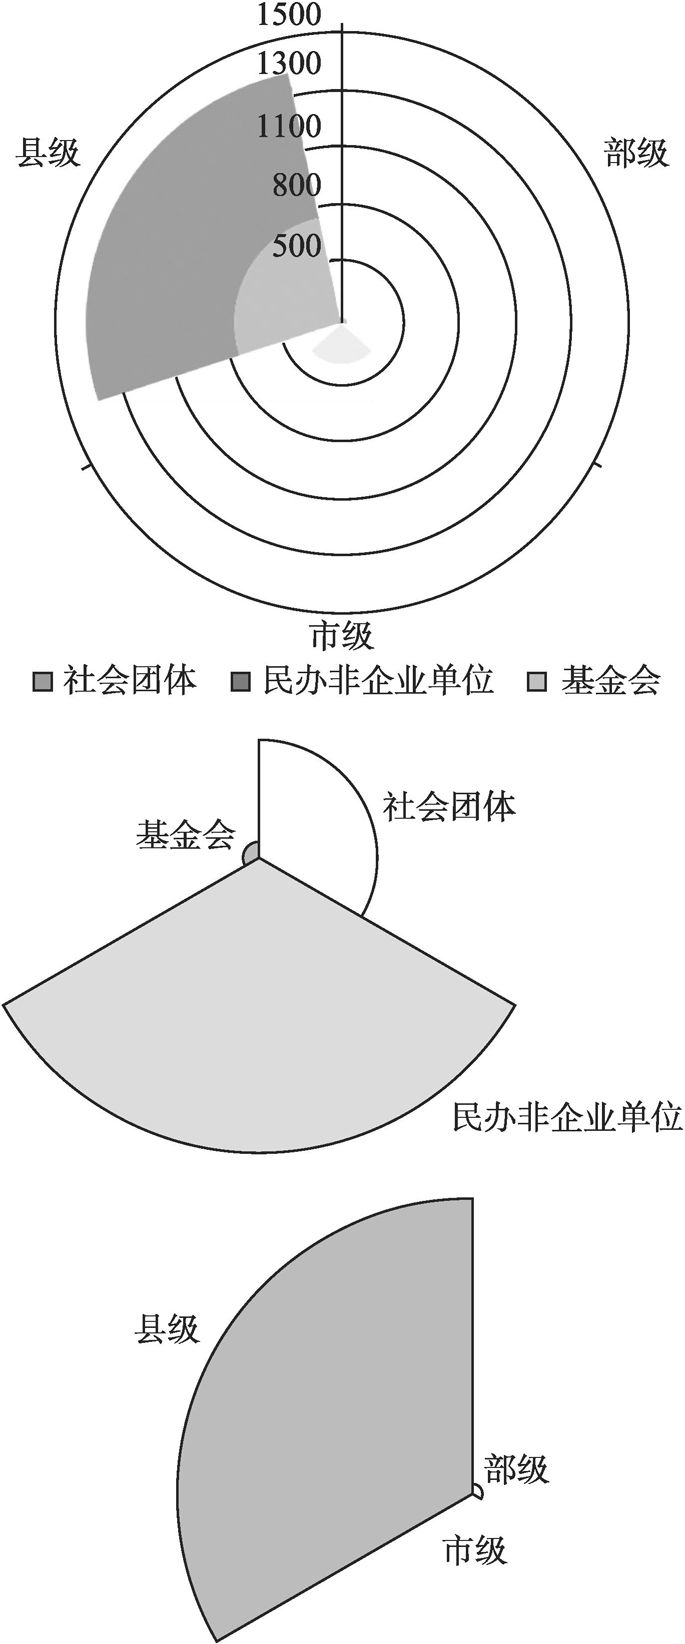 图4-4 上海社会组织类别构成